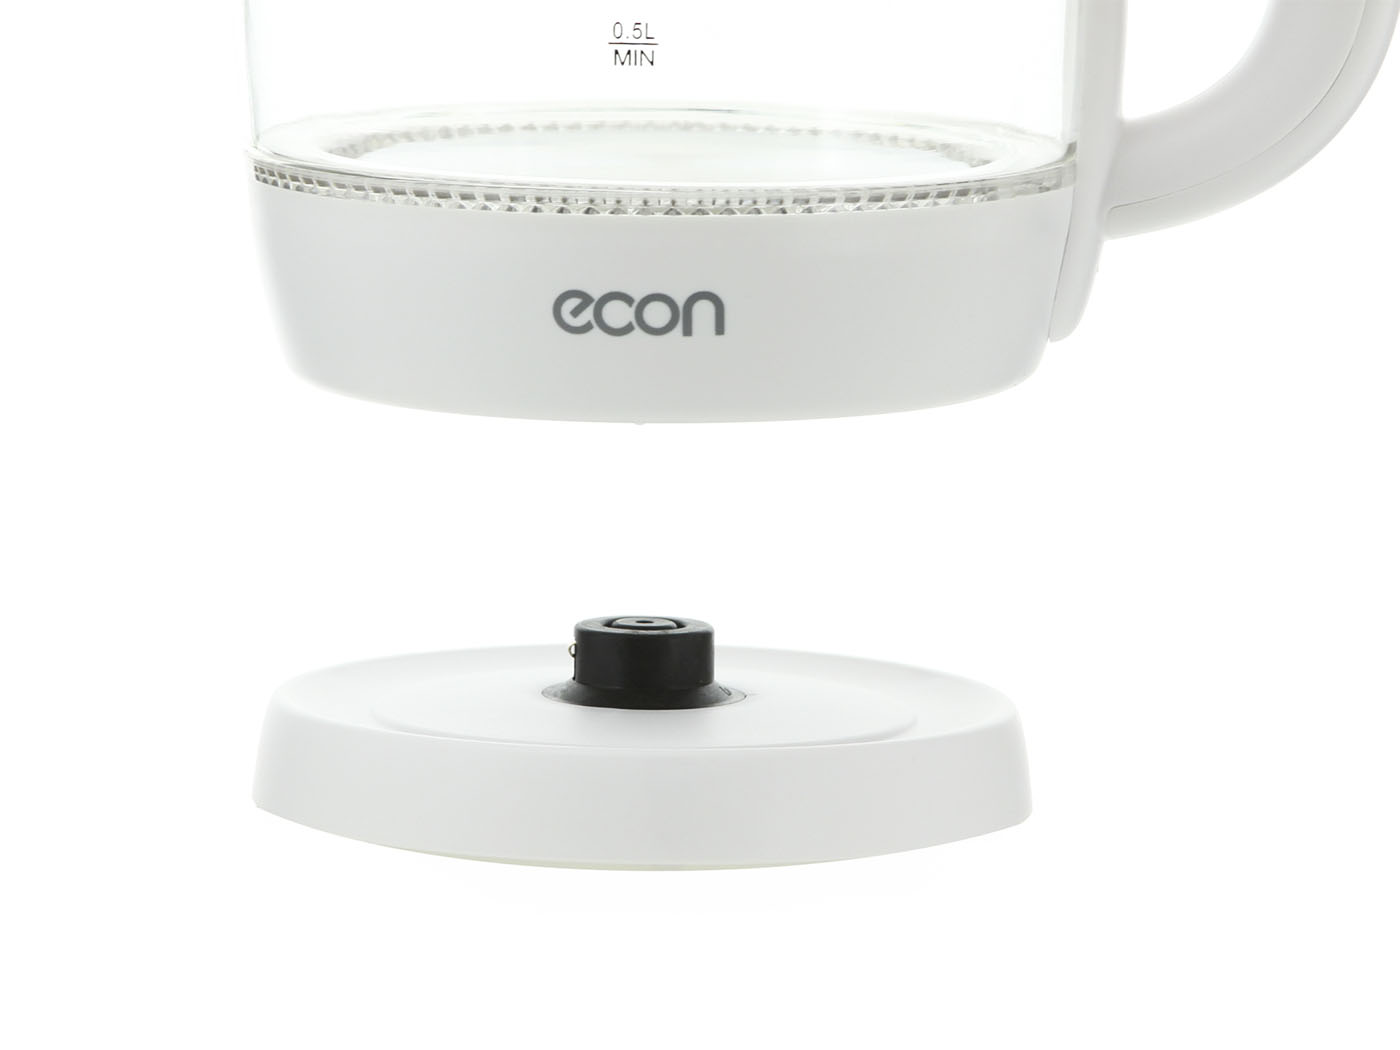 Картинка Чайник ECON ECO-1761KE по разумной цене купить в интернет магазине mall.su